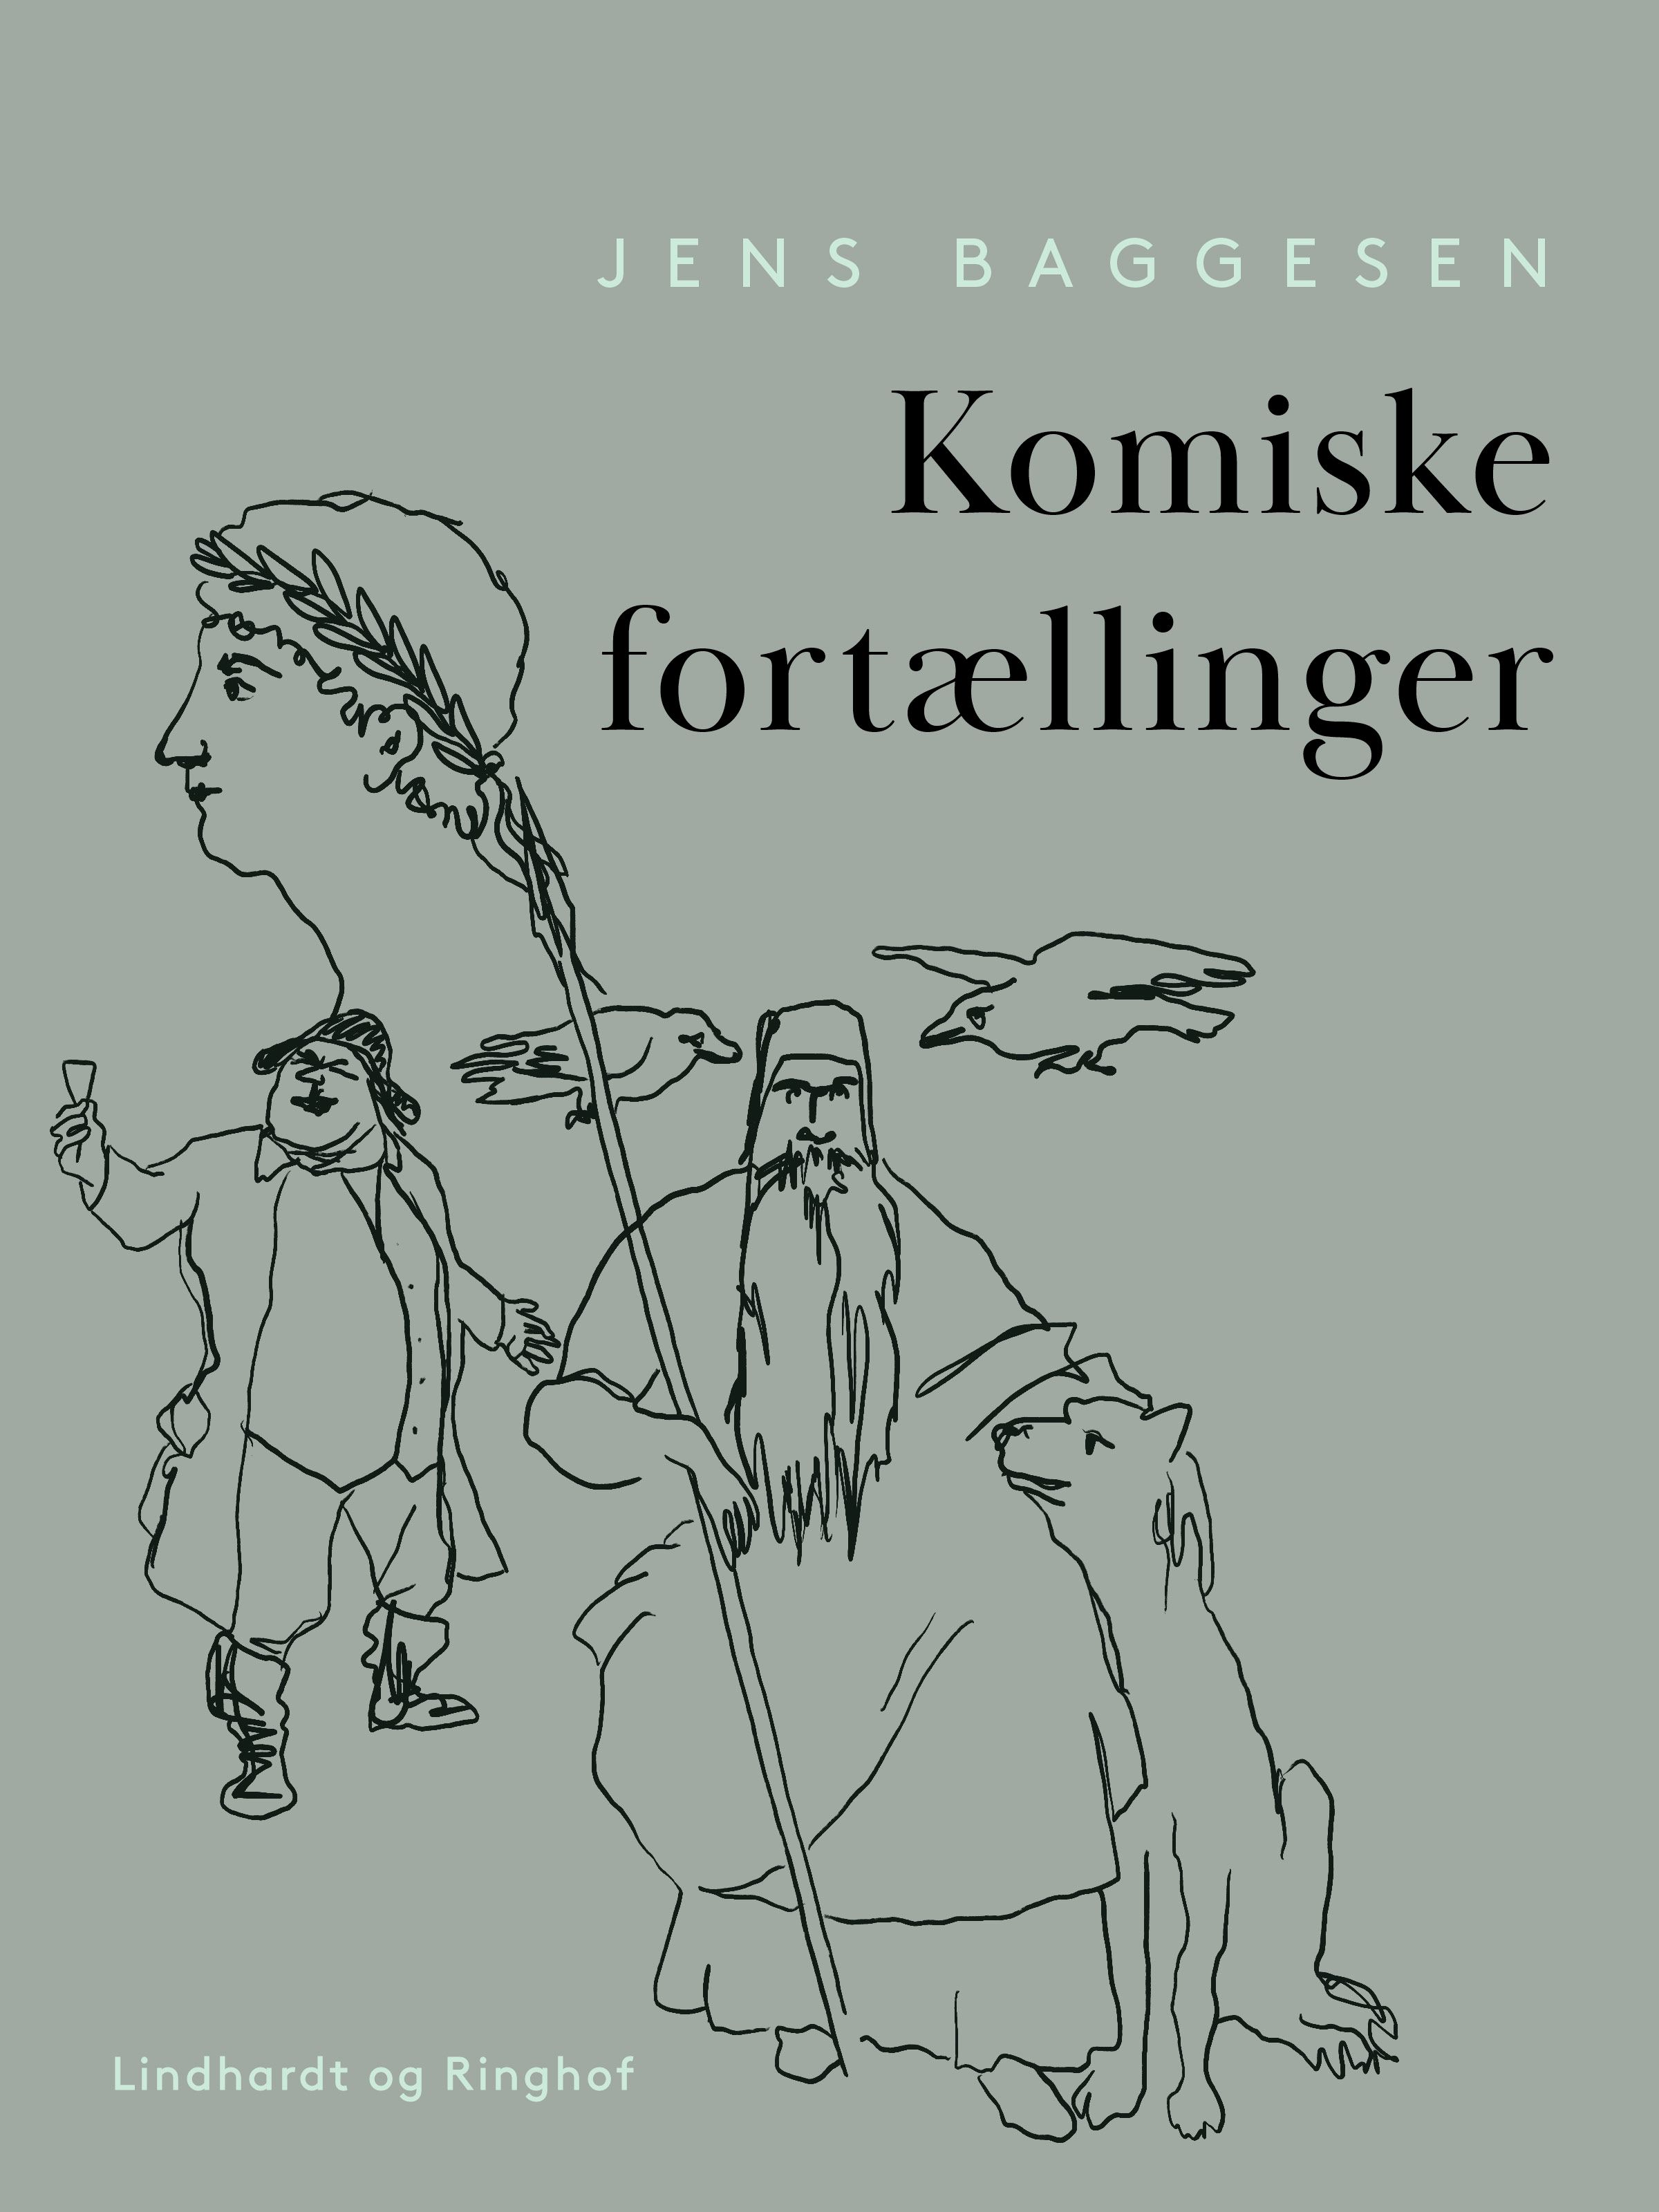 Komiske fortællinger, eBook by Jens Baggesen